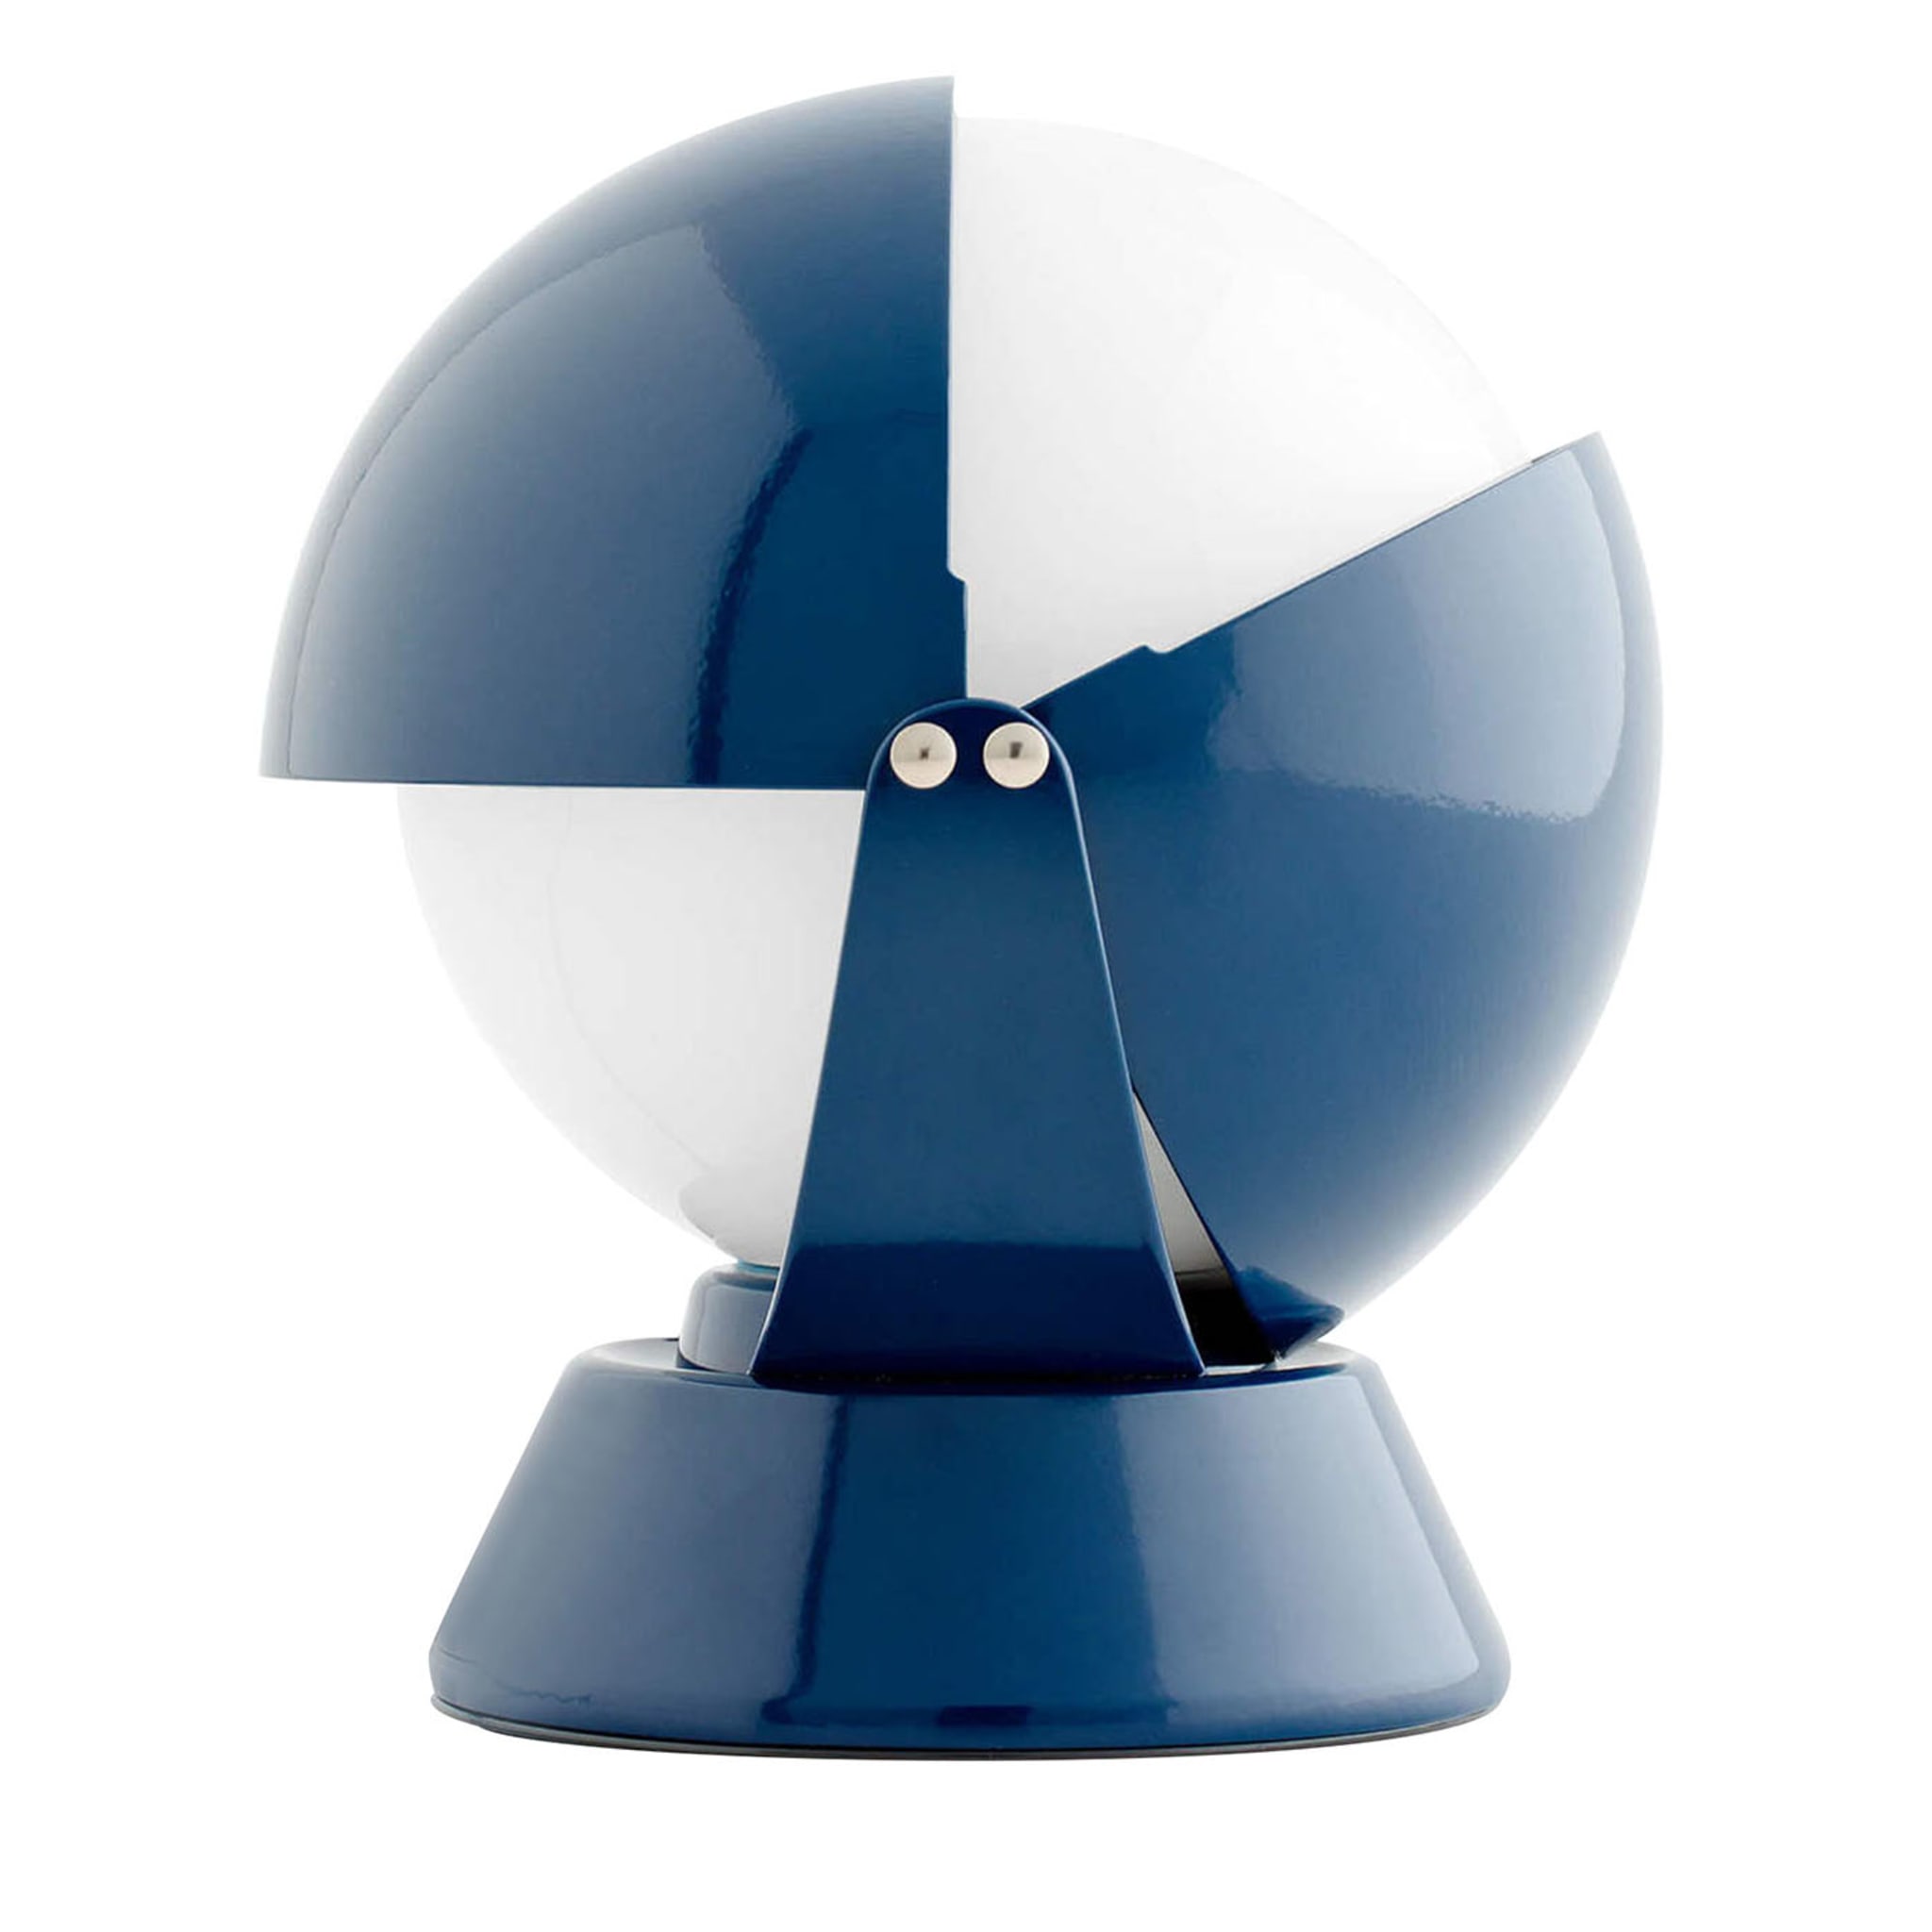 Buonanotte Blue Table Lamp - Main view